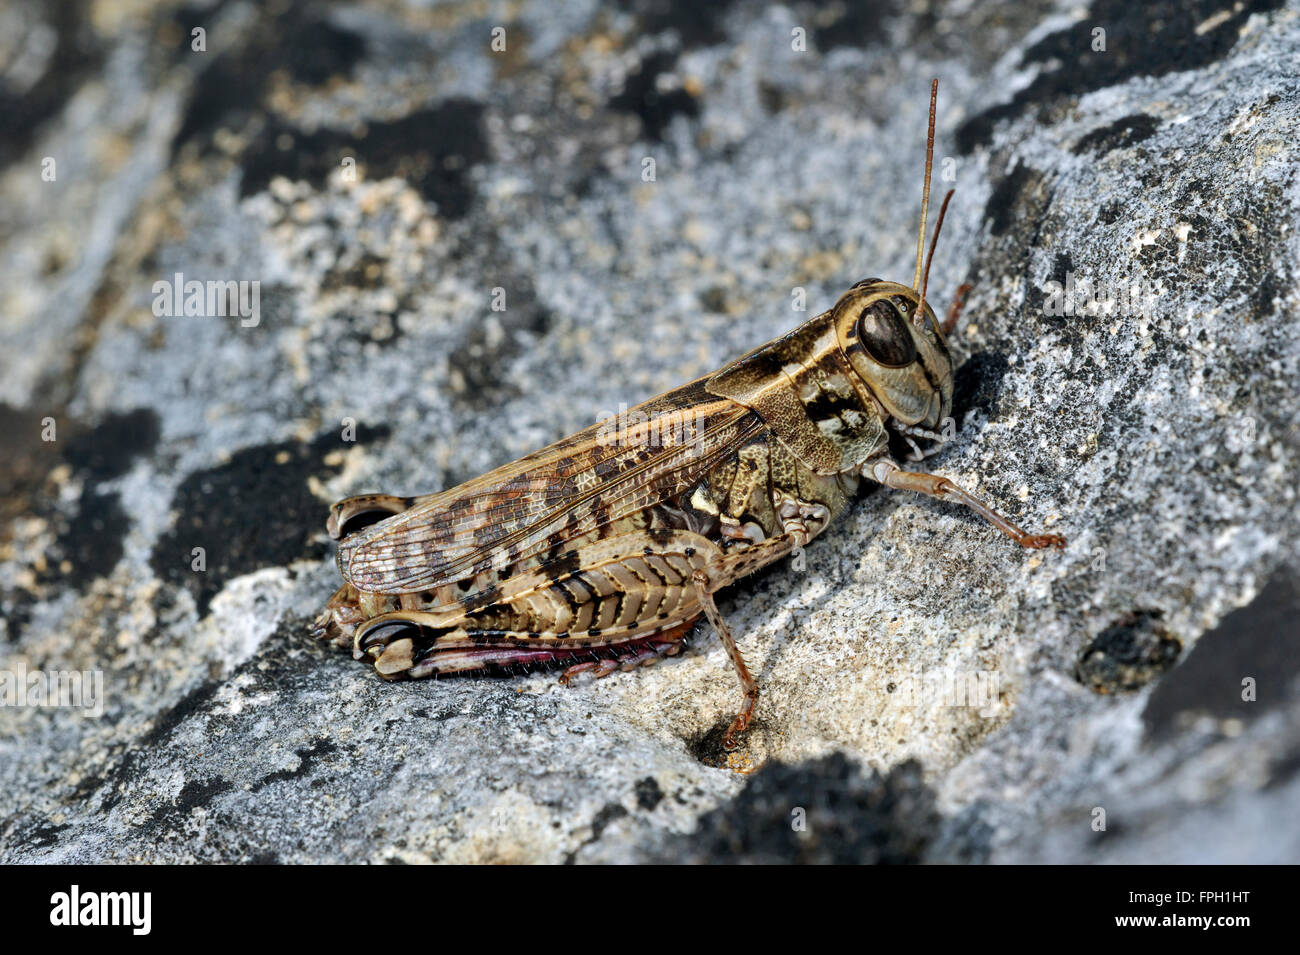 Italian locust (Calliptamus italicus / Calliptenus cerisanus) on rock Stock Photo